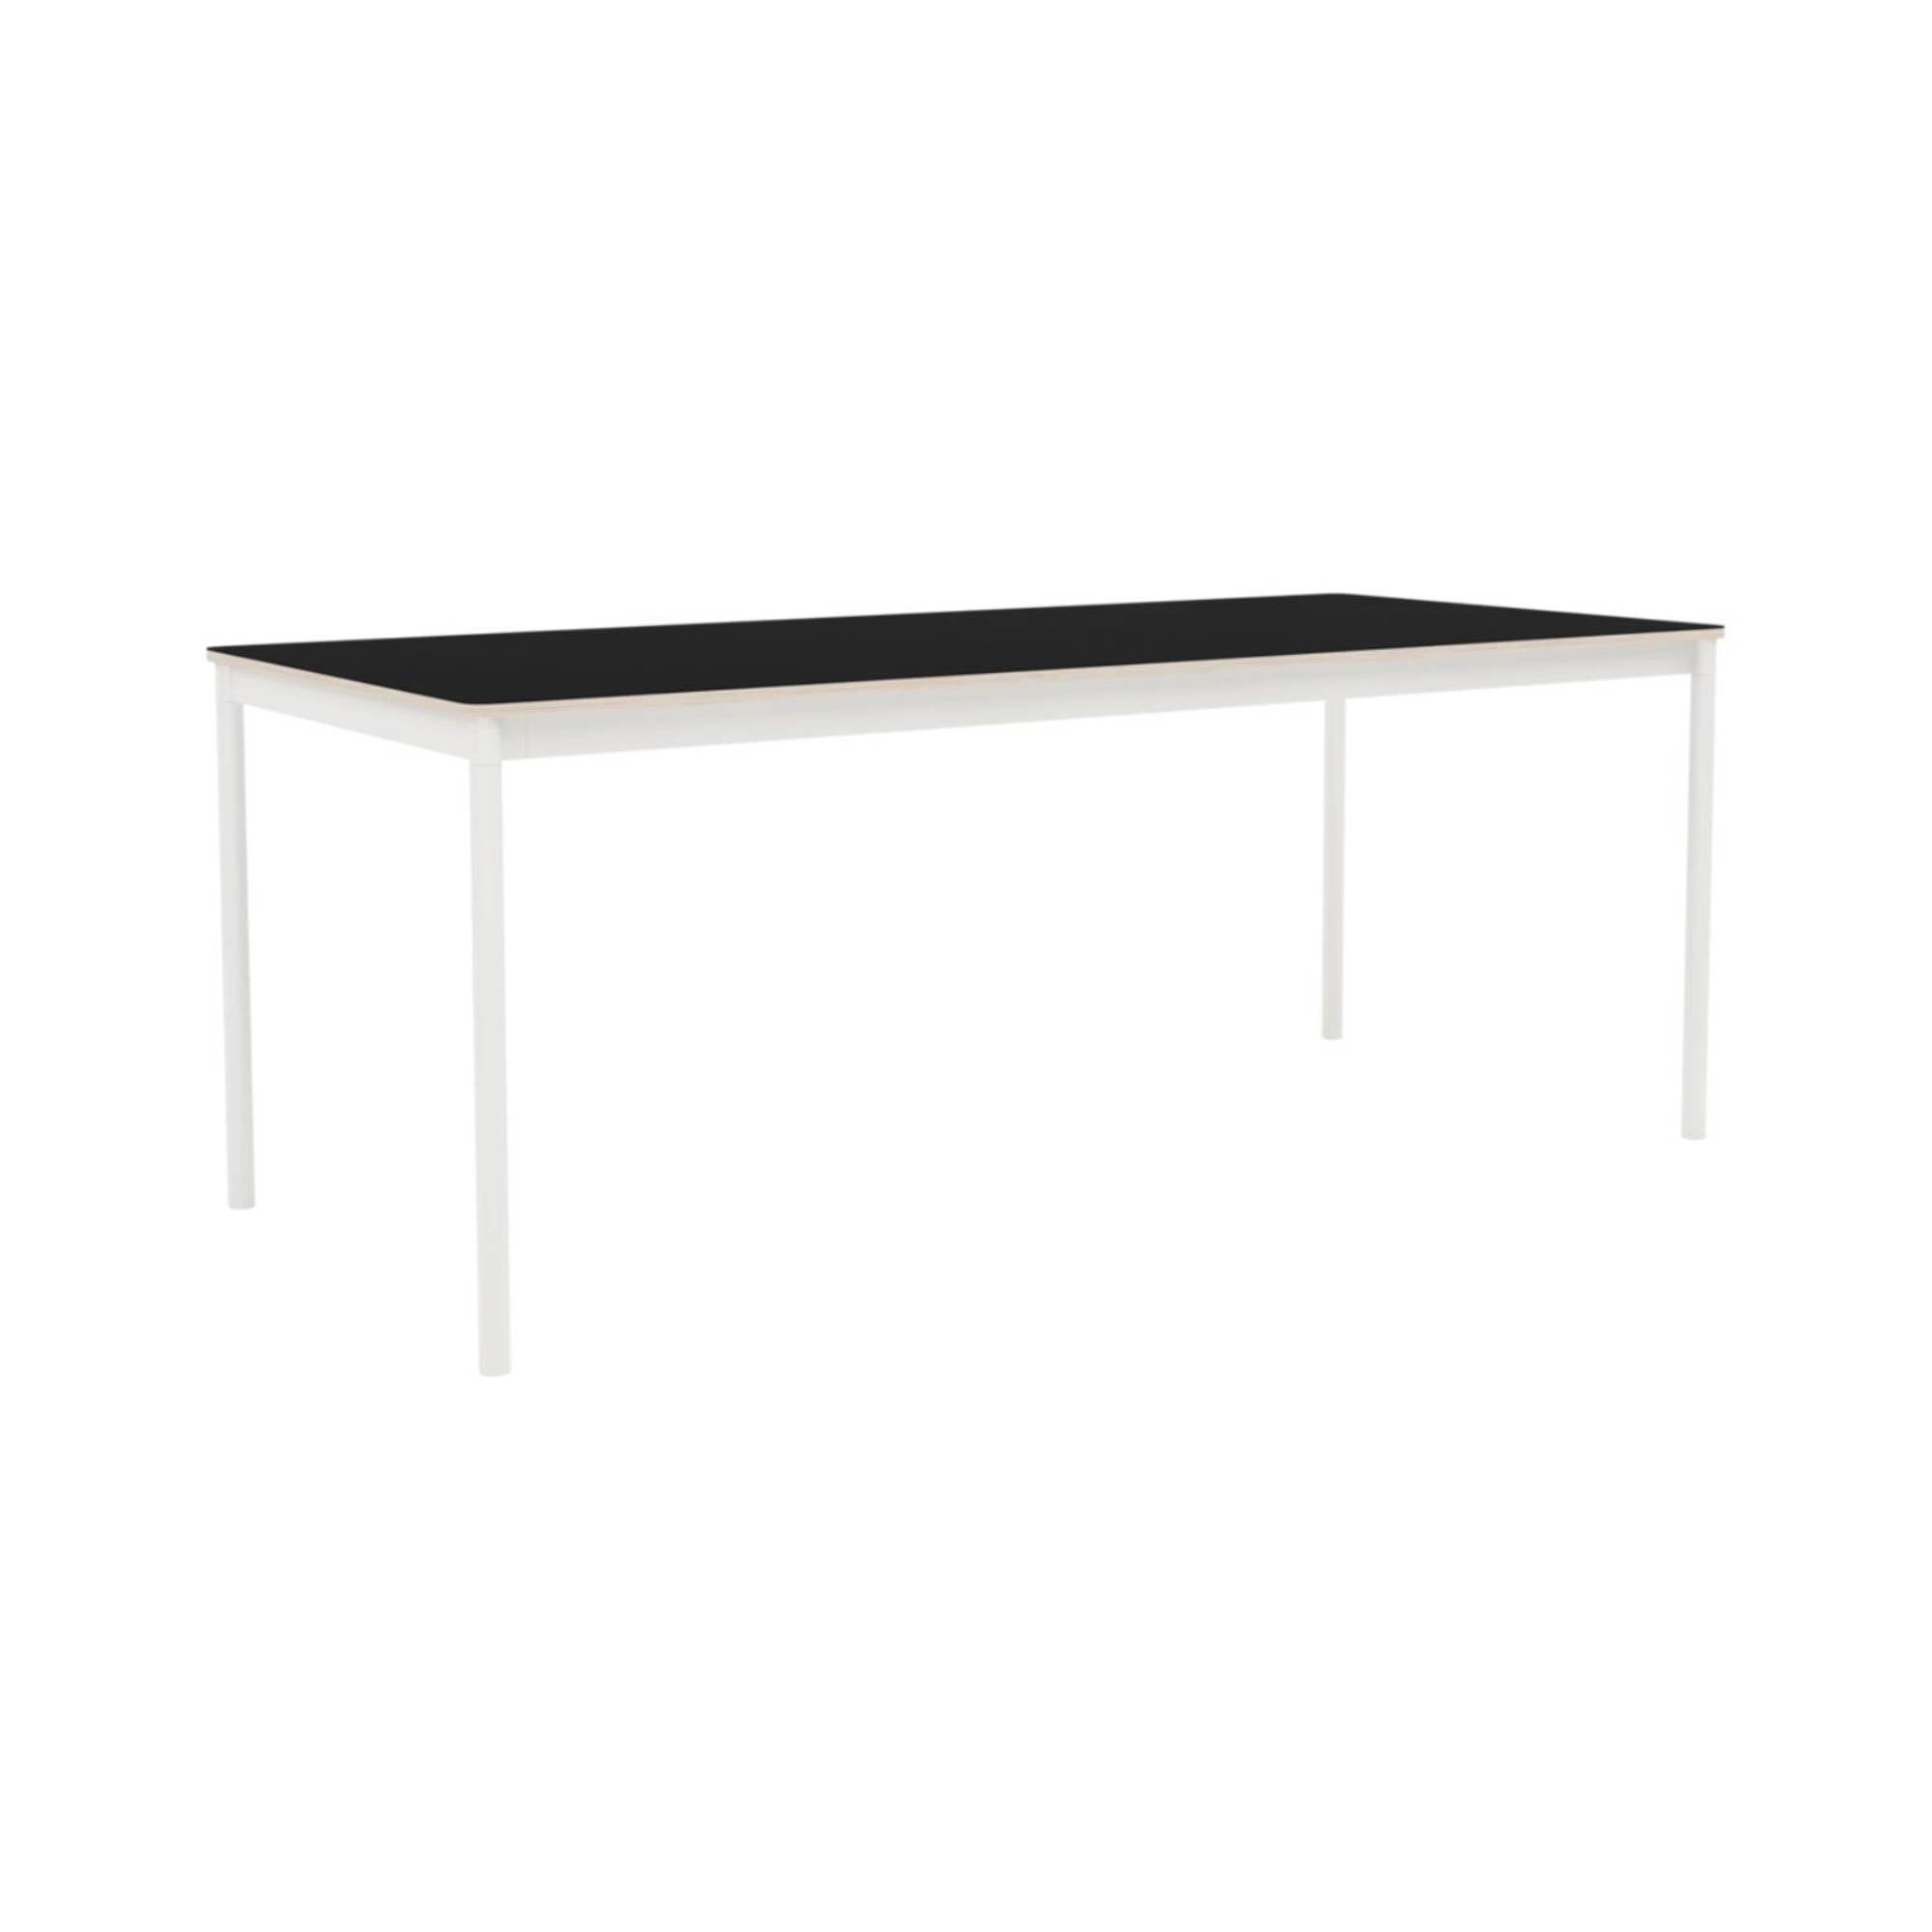 Base Table: Medium + Black Laminate + Plywood Edge + White